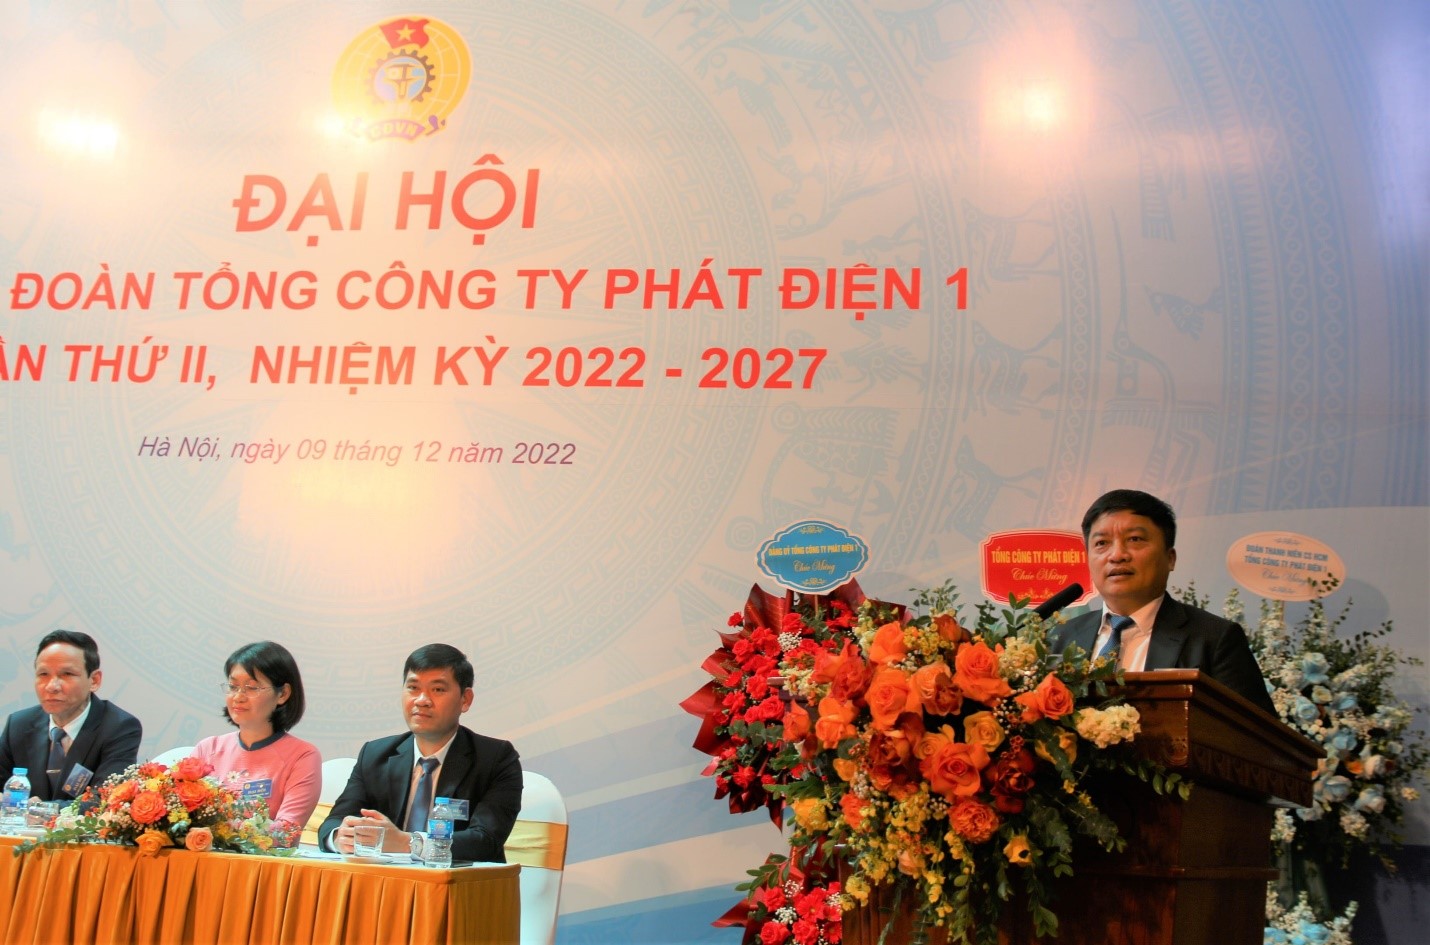 Công đoàn Tổng công ty phát điện 1 tổ chức thành công đại hội lần thứ II, nhiệm kỳ 2022 - 2027 2